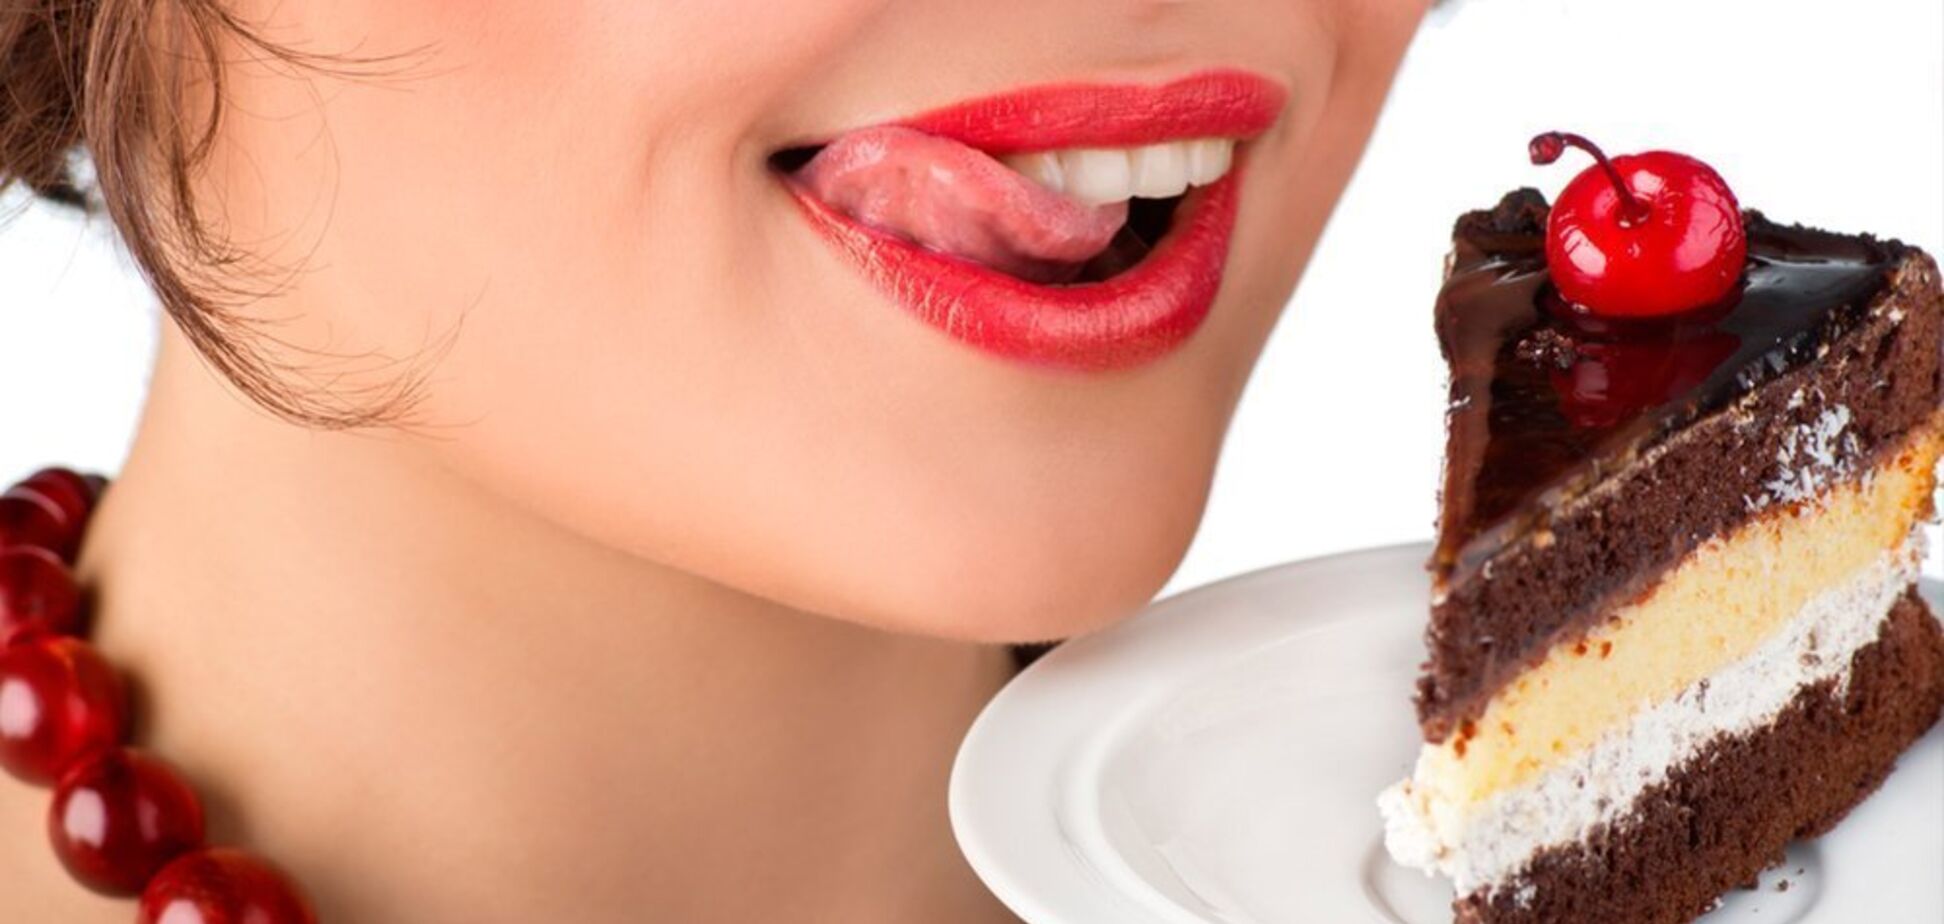 Без шкоди для фігури: дієтологиня поділилася рецептами дієтичних десертів